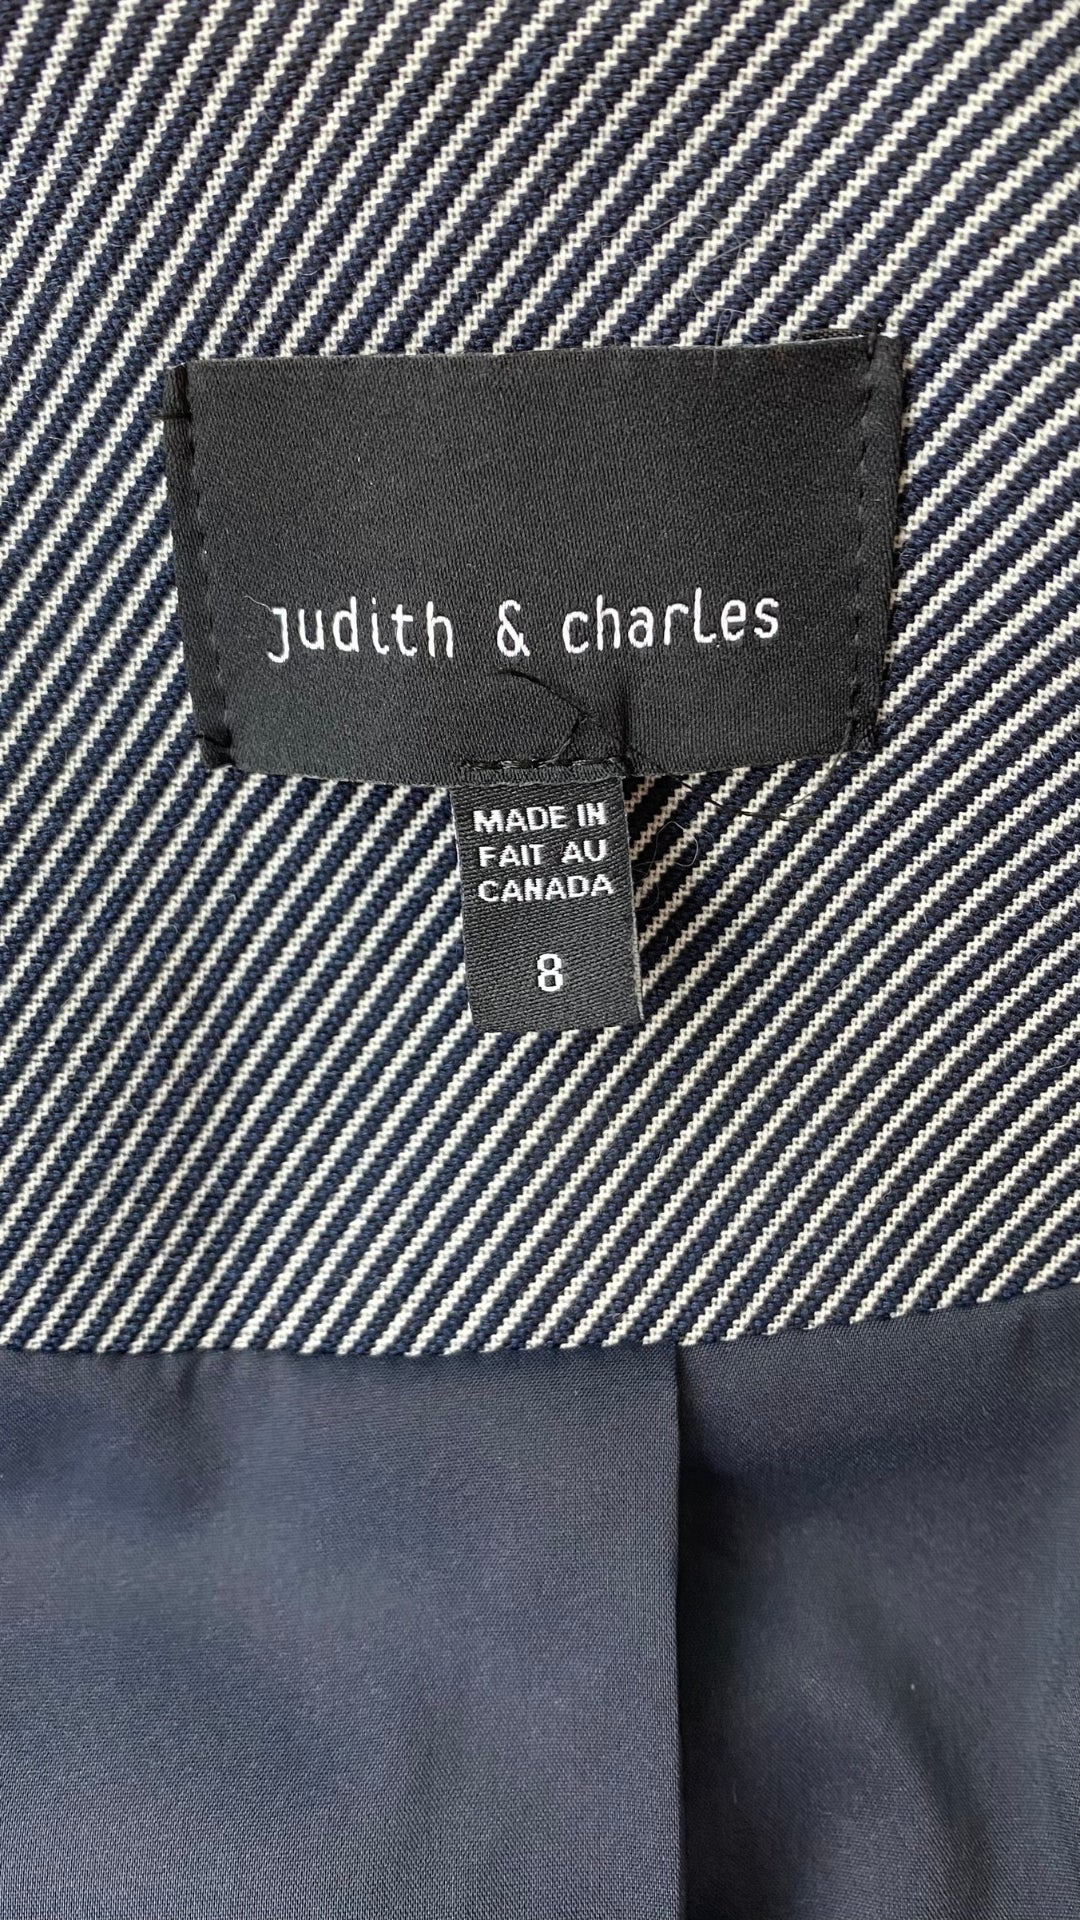 Veste à rayures et fermeture éclair Judith & Charles, taille 8 (small). Vue de l'étiquette de marque et taille.